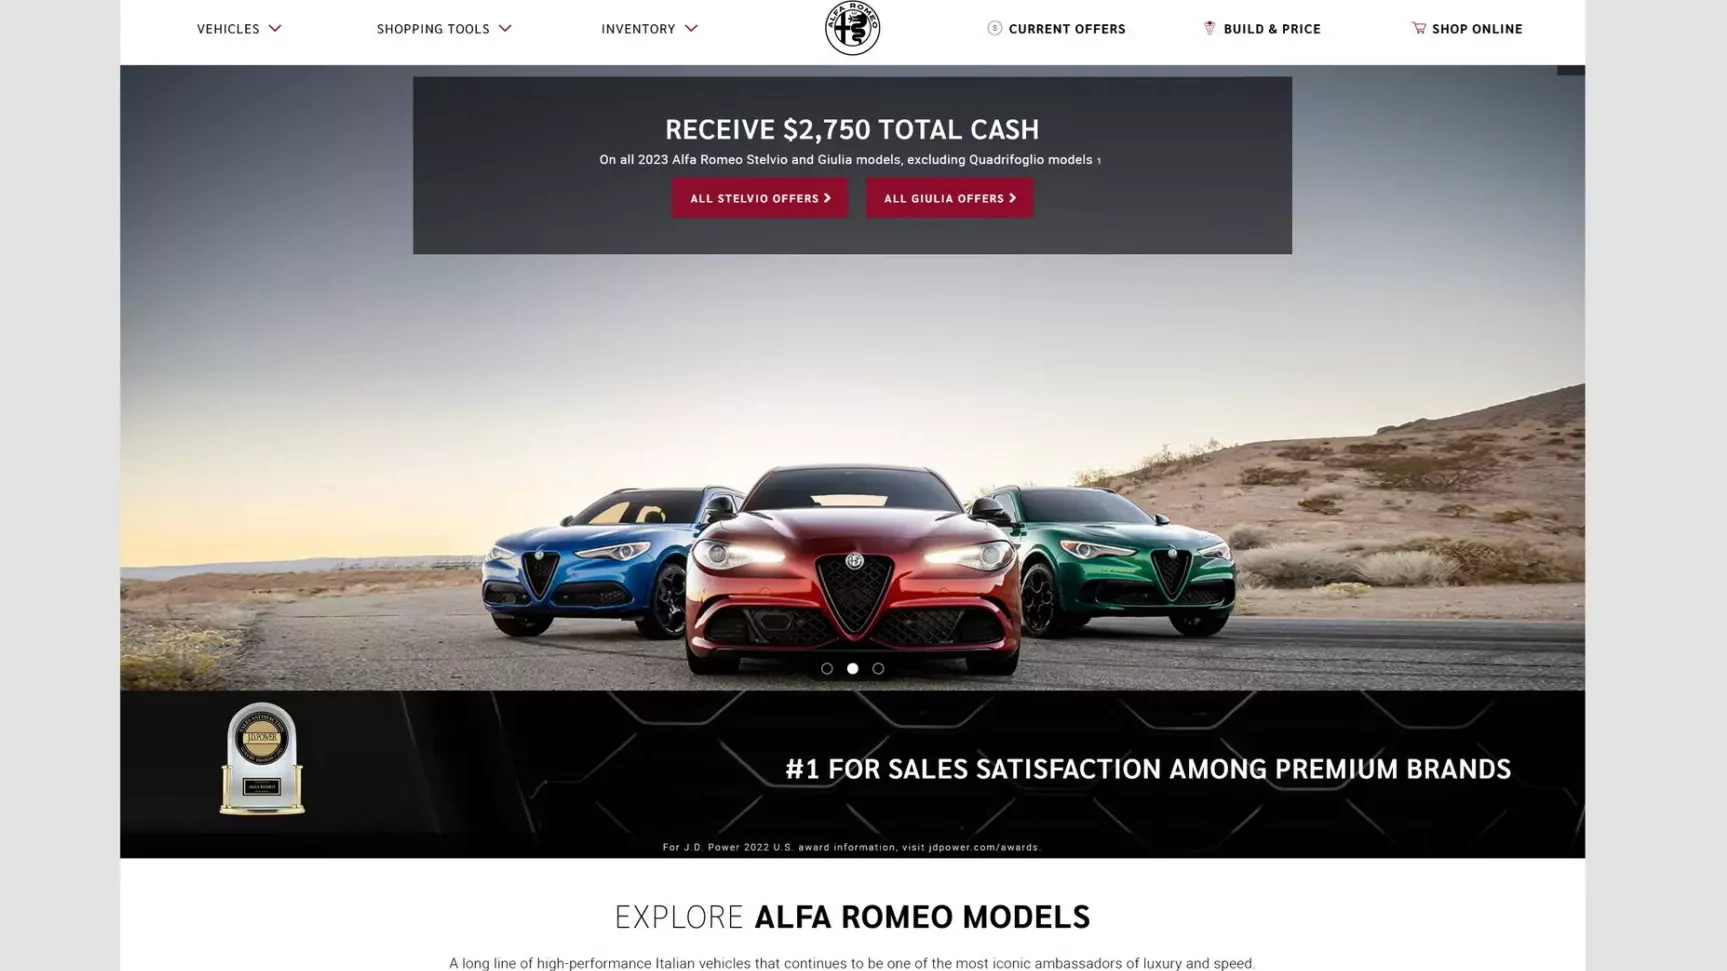 Alfa Romeo y RAM con los mejores websites; VW y Volvo los peores, según J.D. Power. 2